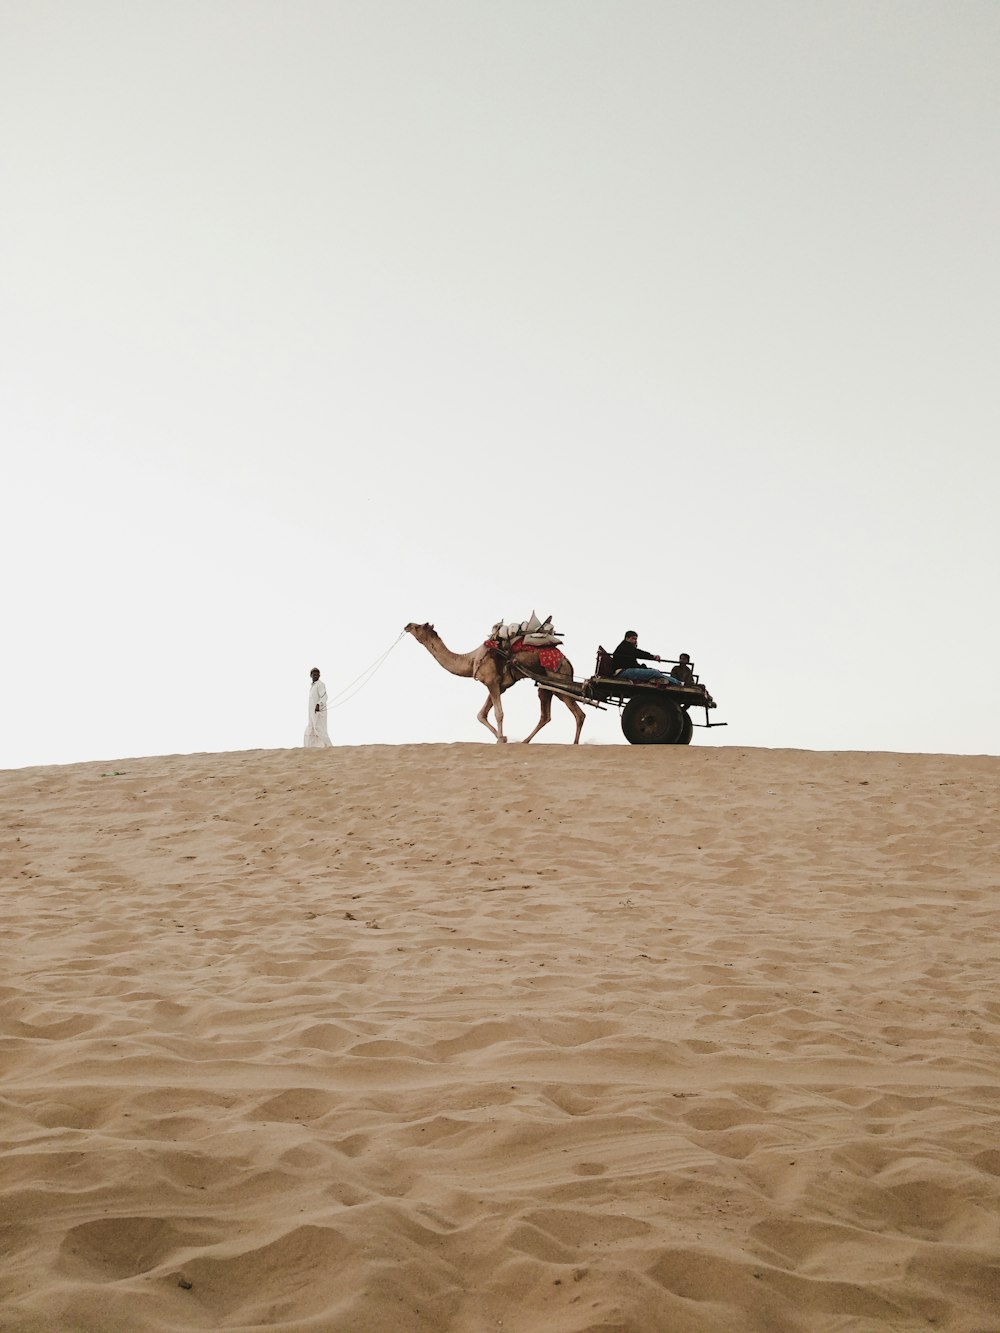 man riding camel on desert during daytime